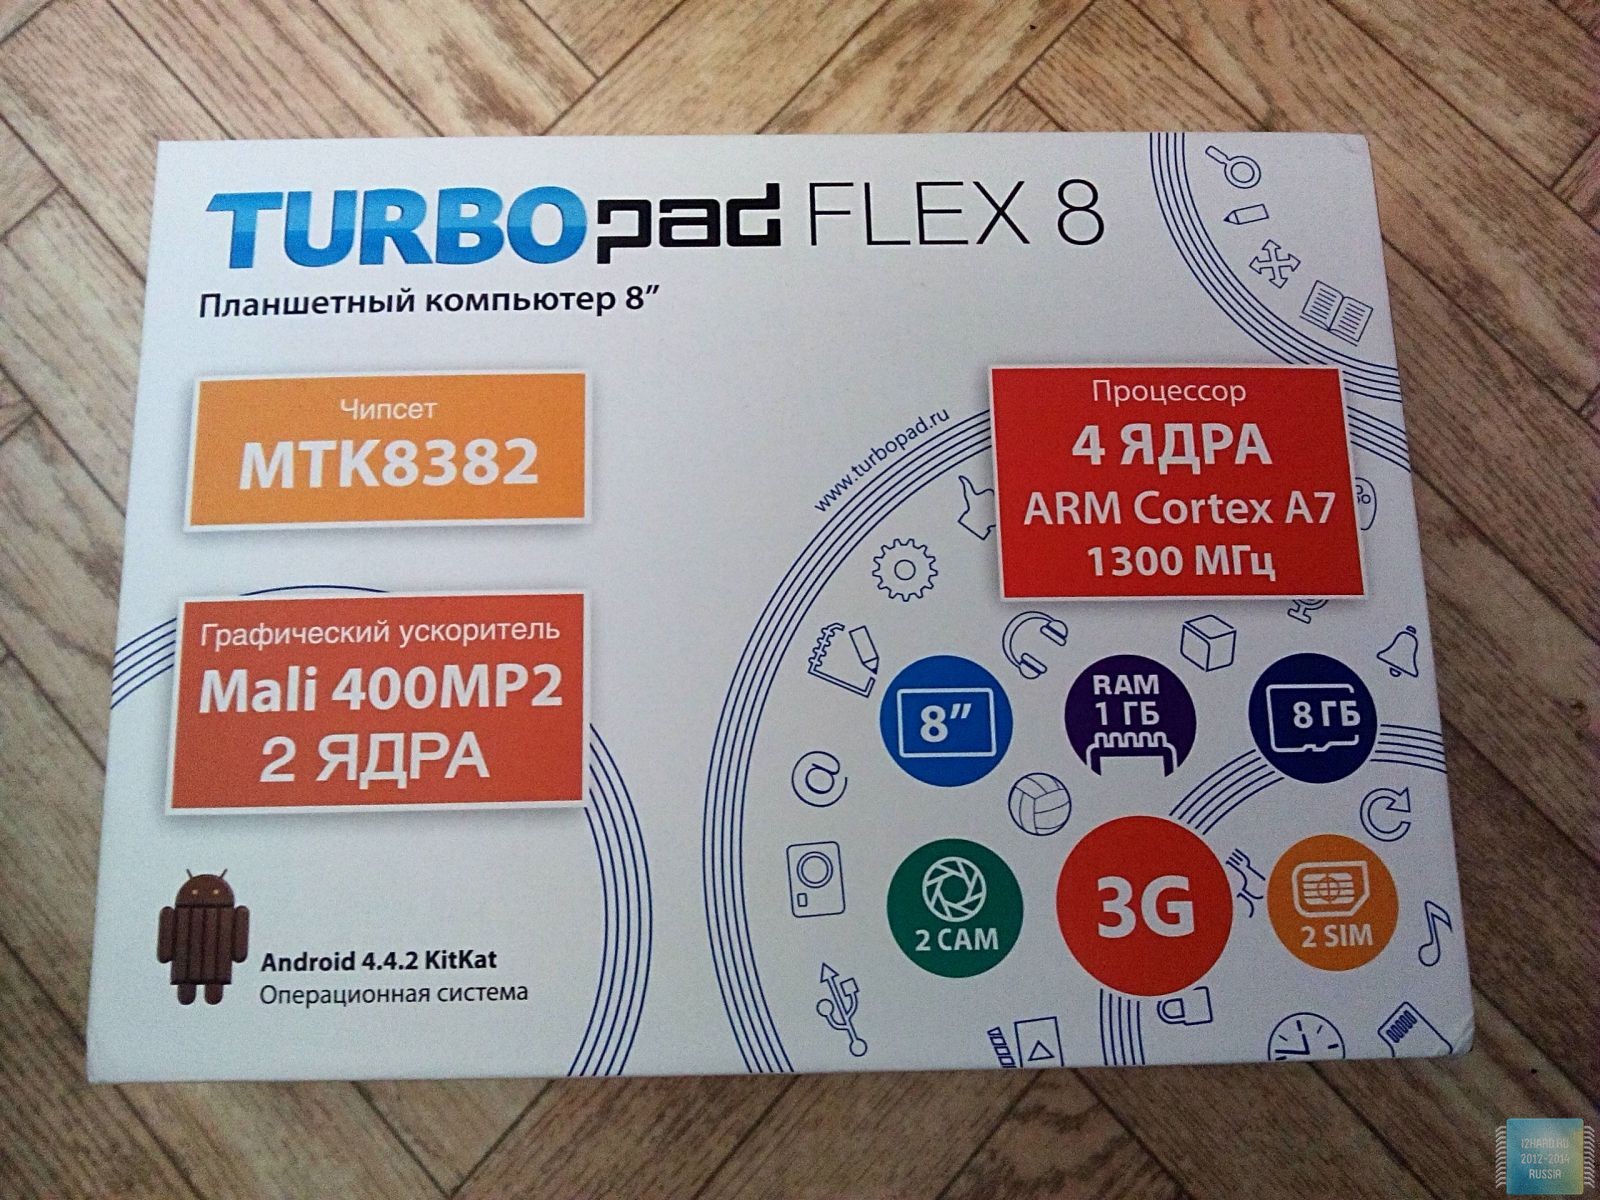 Примеры фотографий (8" планшет TurboPad Flex 8)